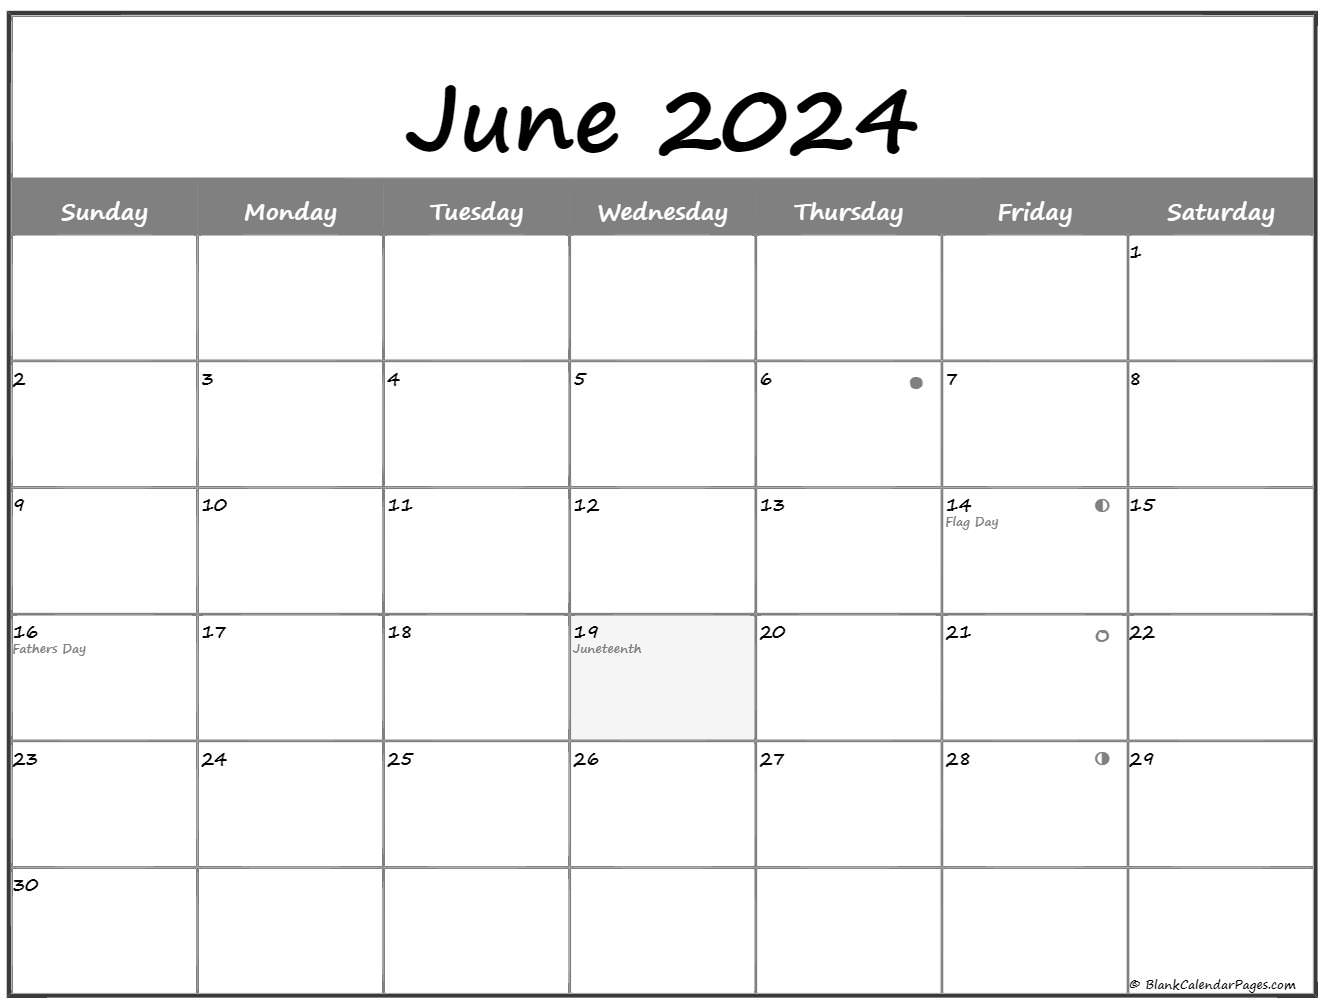 Moon Calendar June 2022 June 2022 Lunar Calendar | Moon Phase Calendar